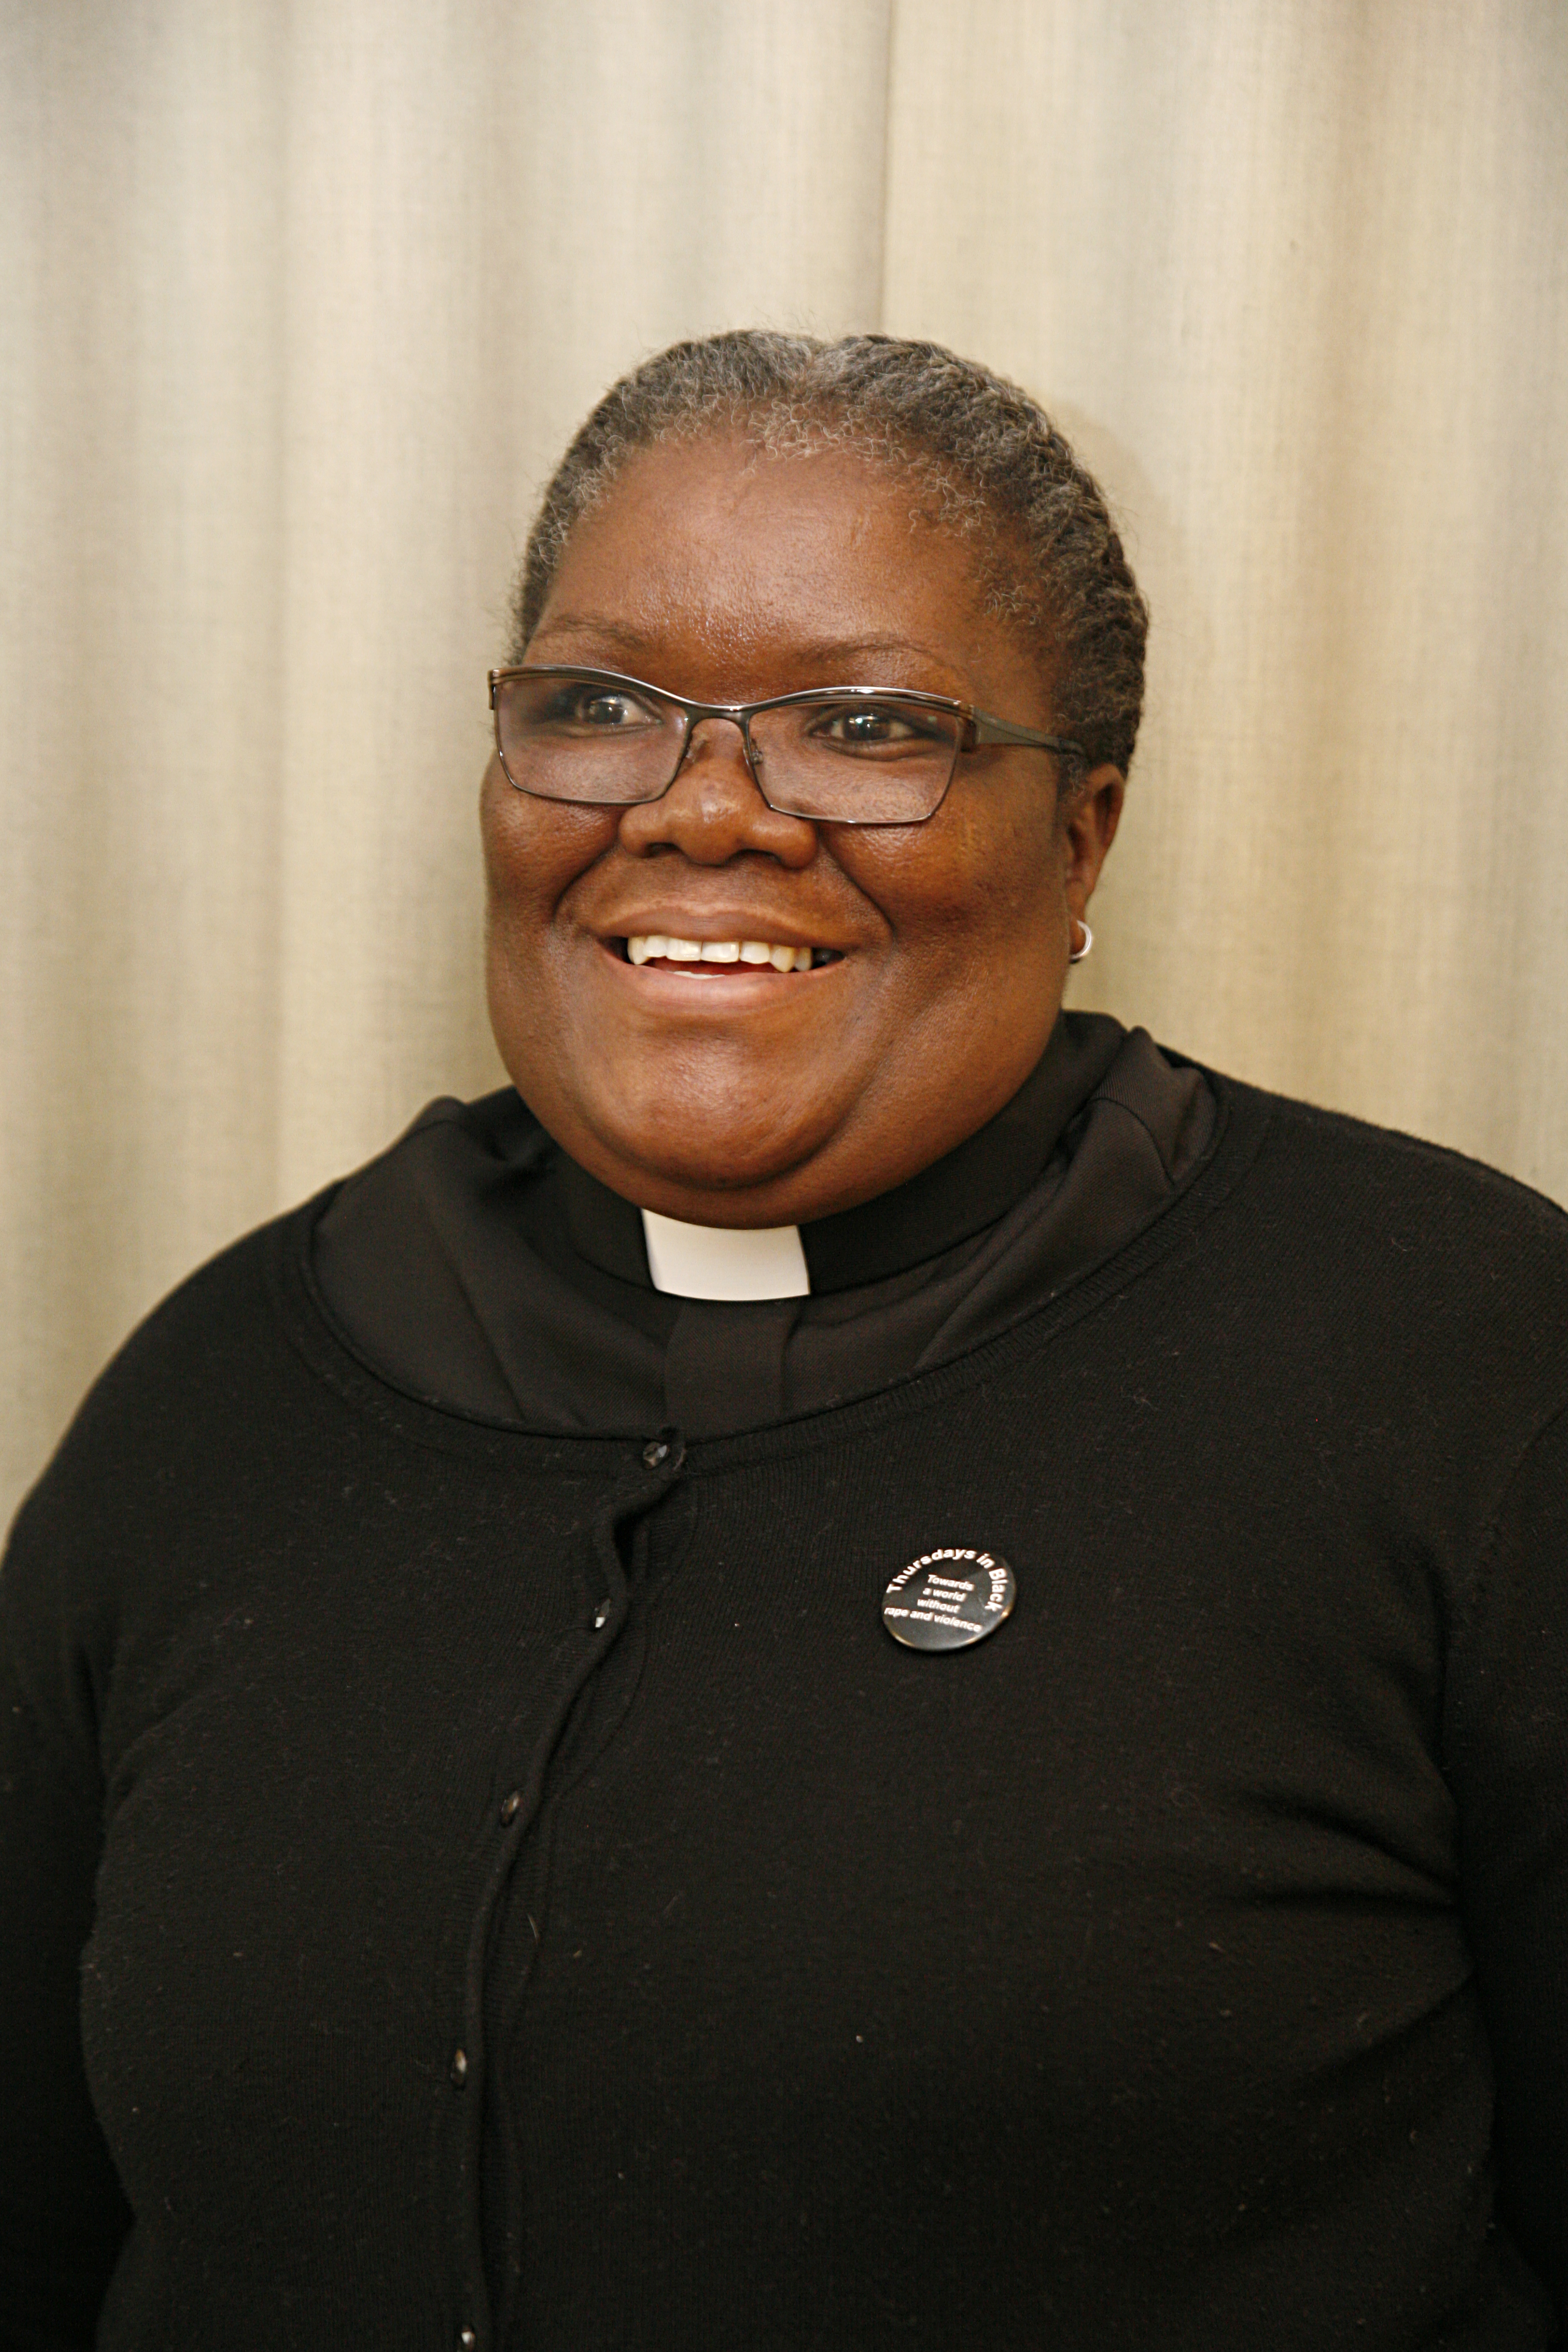 Pastori Phumzile Mabizela oli pukeutunut haastattelupäivänä mustiin vaatteisiin. Hän on mukana liikkeessä